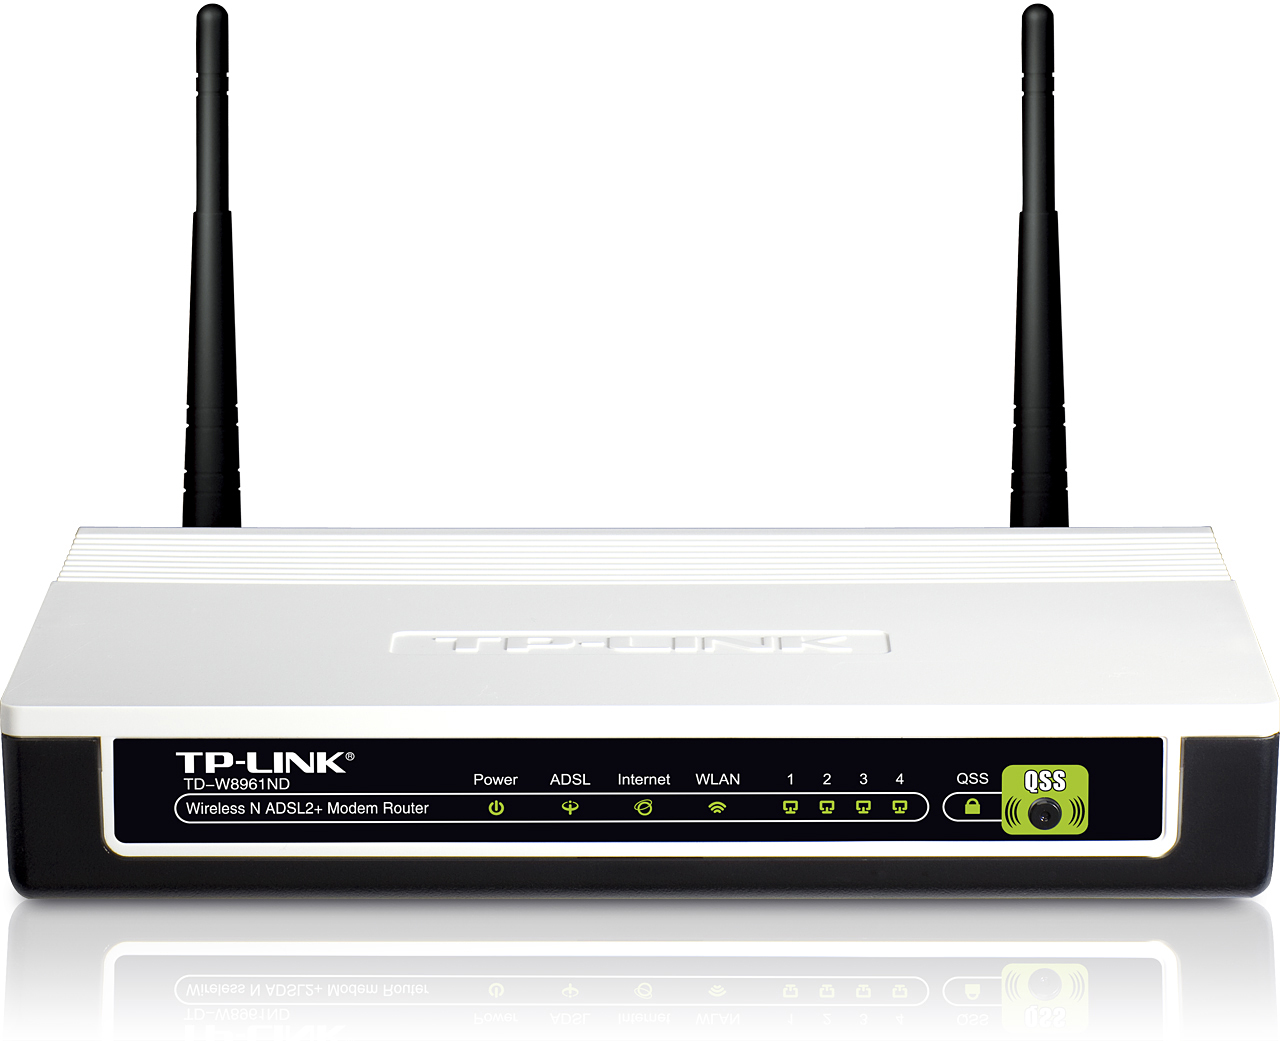  مودم اي دي اس ال -ADSL MODEM  -TP-LINK TD-W8961ND